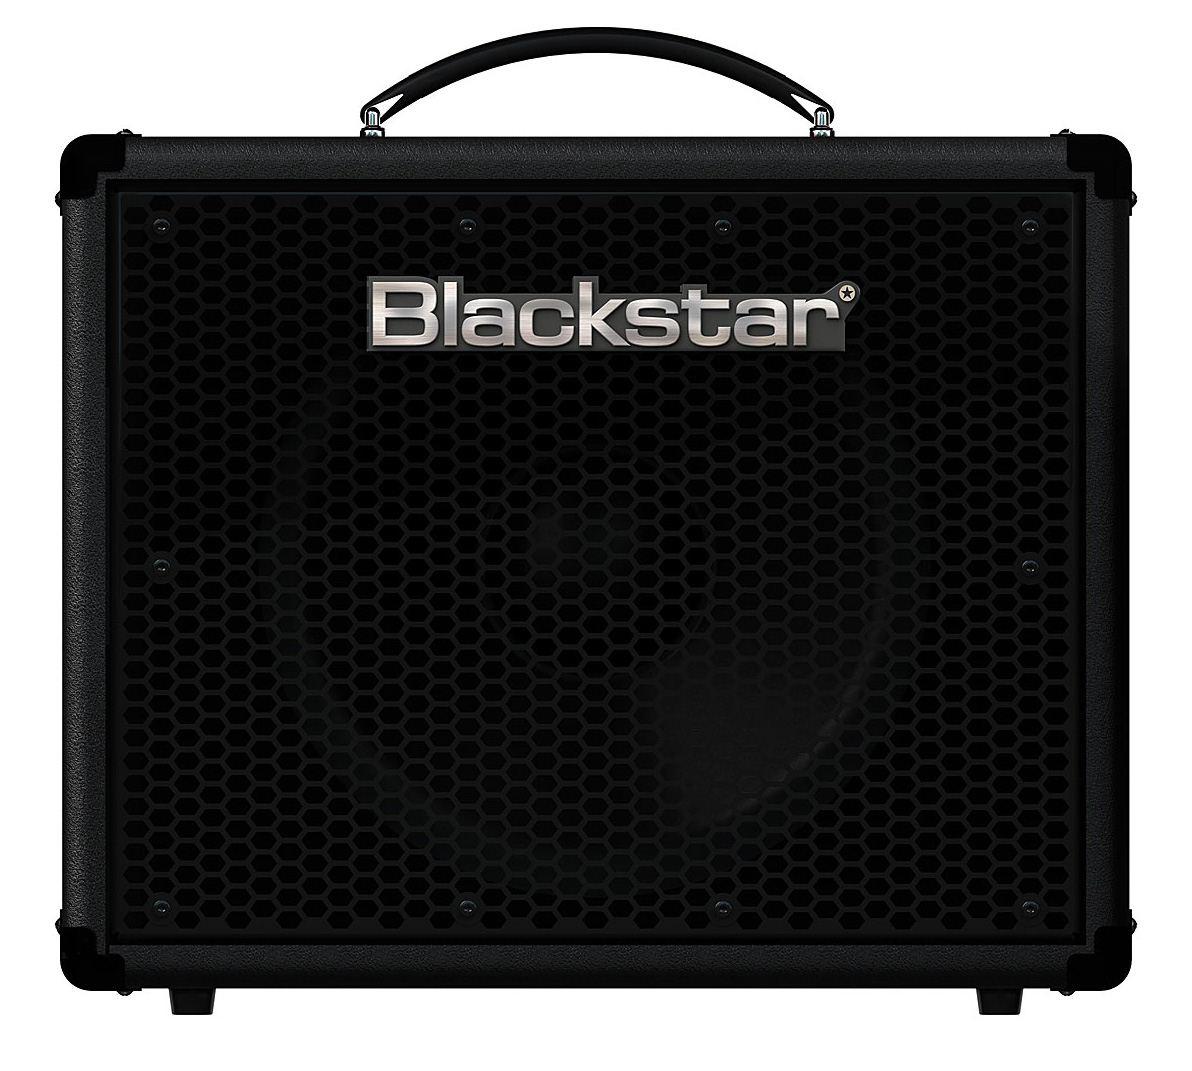 Foto Blackstar Ht Metal 5 Amplificador Combo Guitarra foto 894604